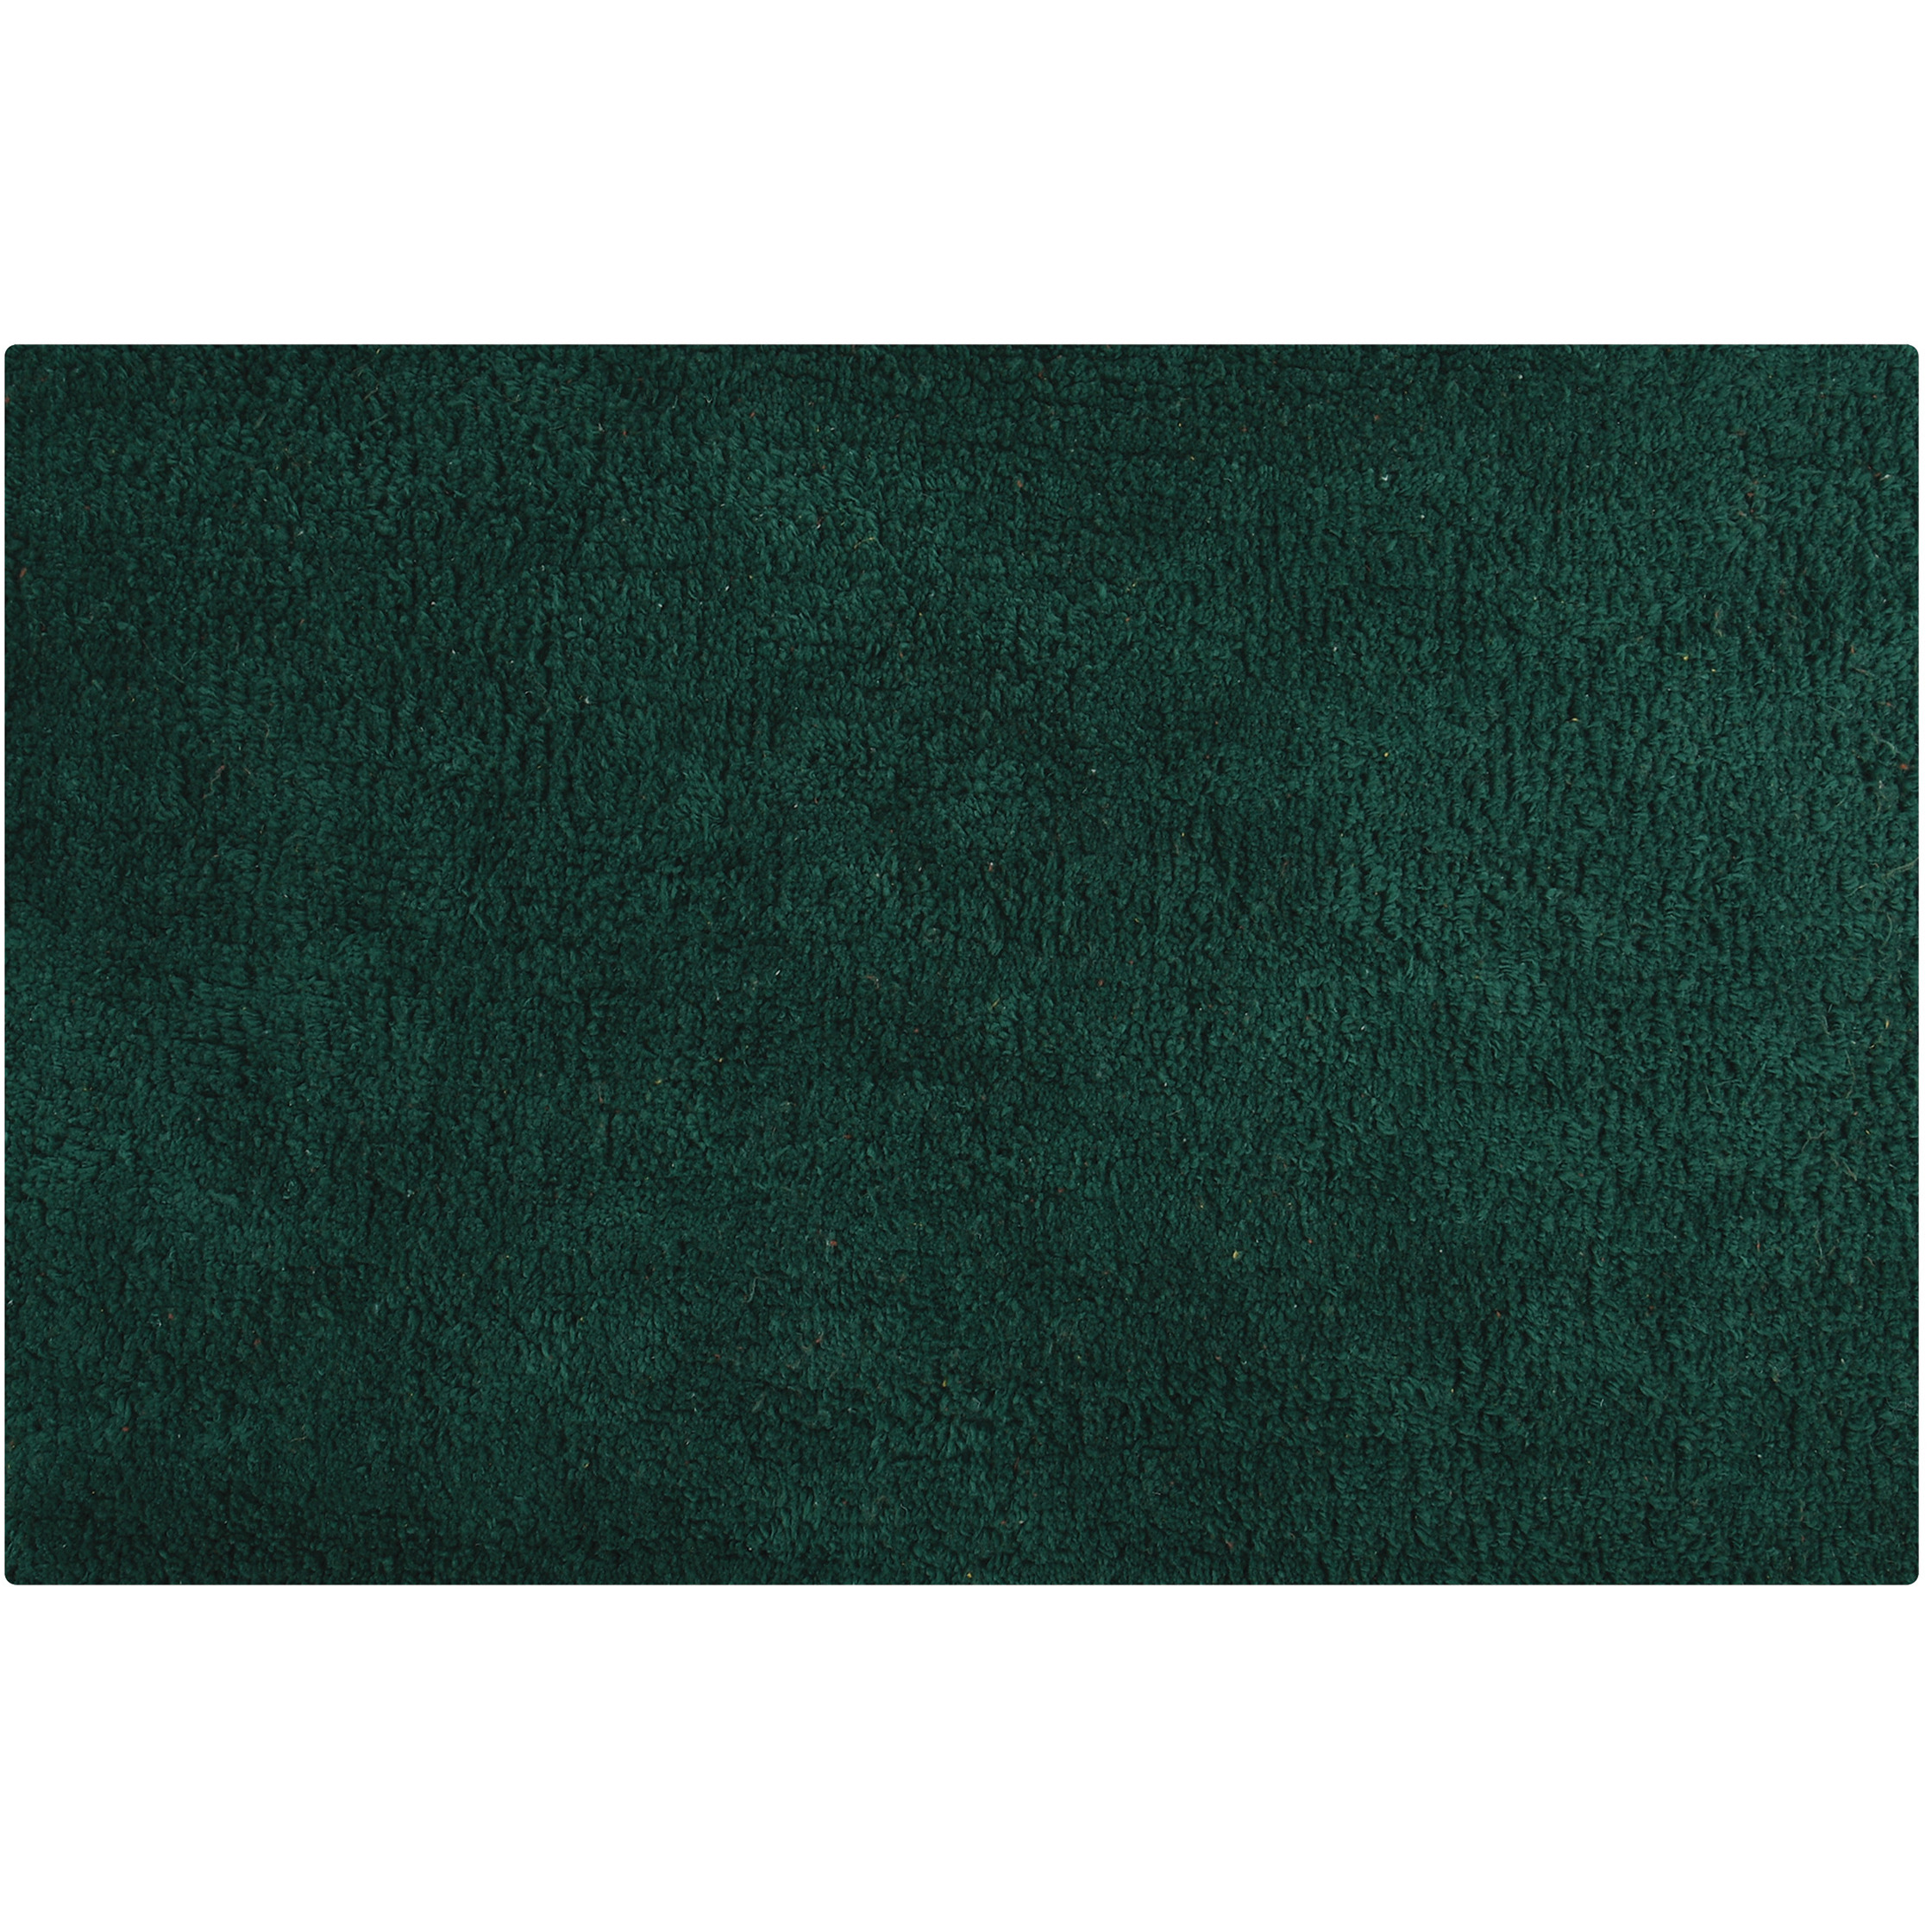 Badkamerkleedje-badmat tapijtje voor op de vloer donkergroen 45 x 70 cm